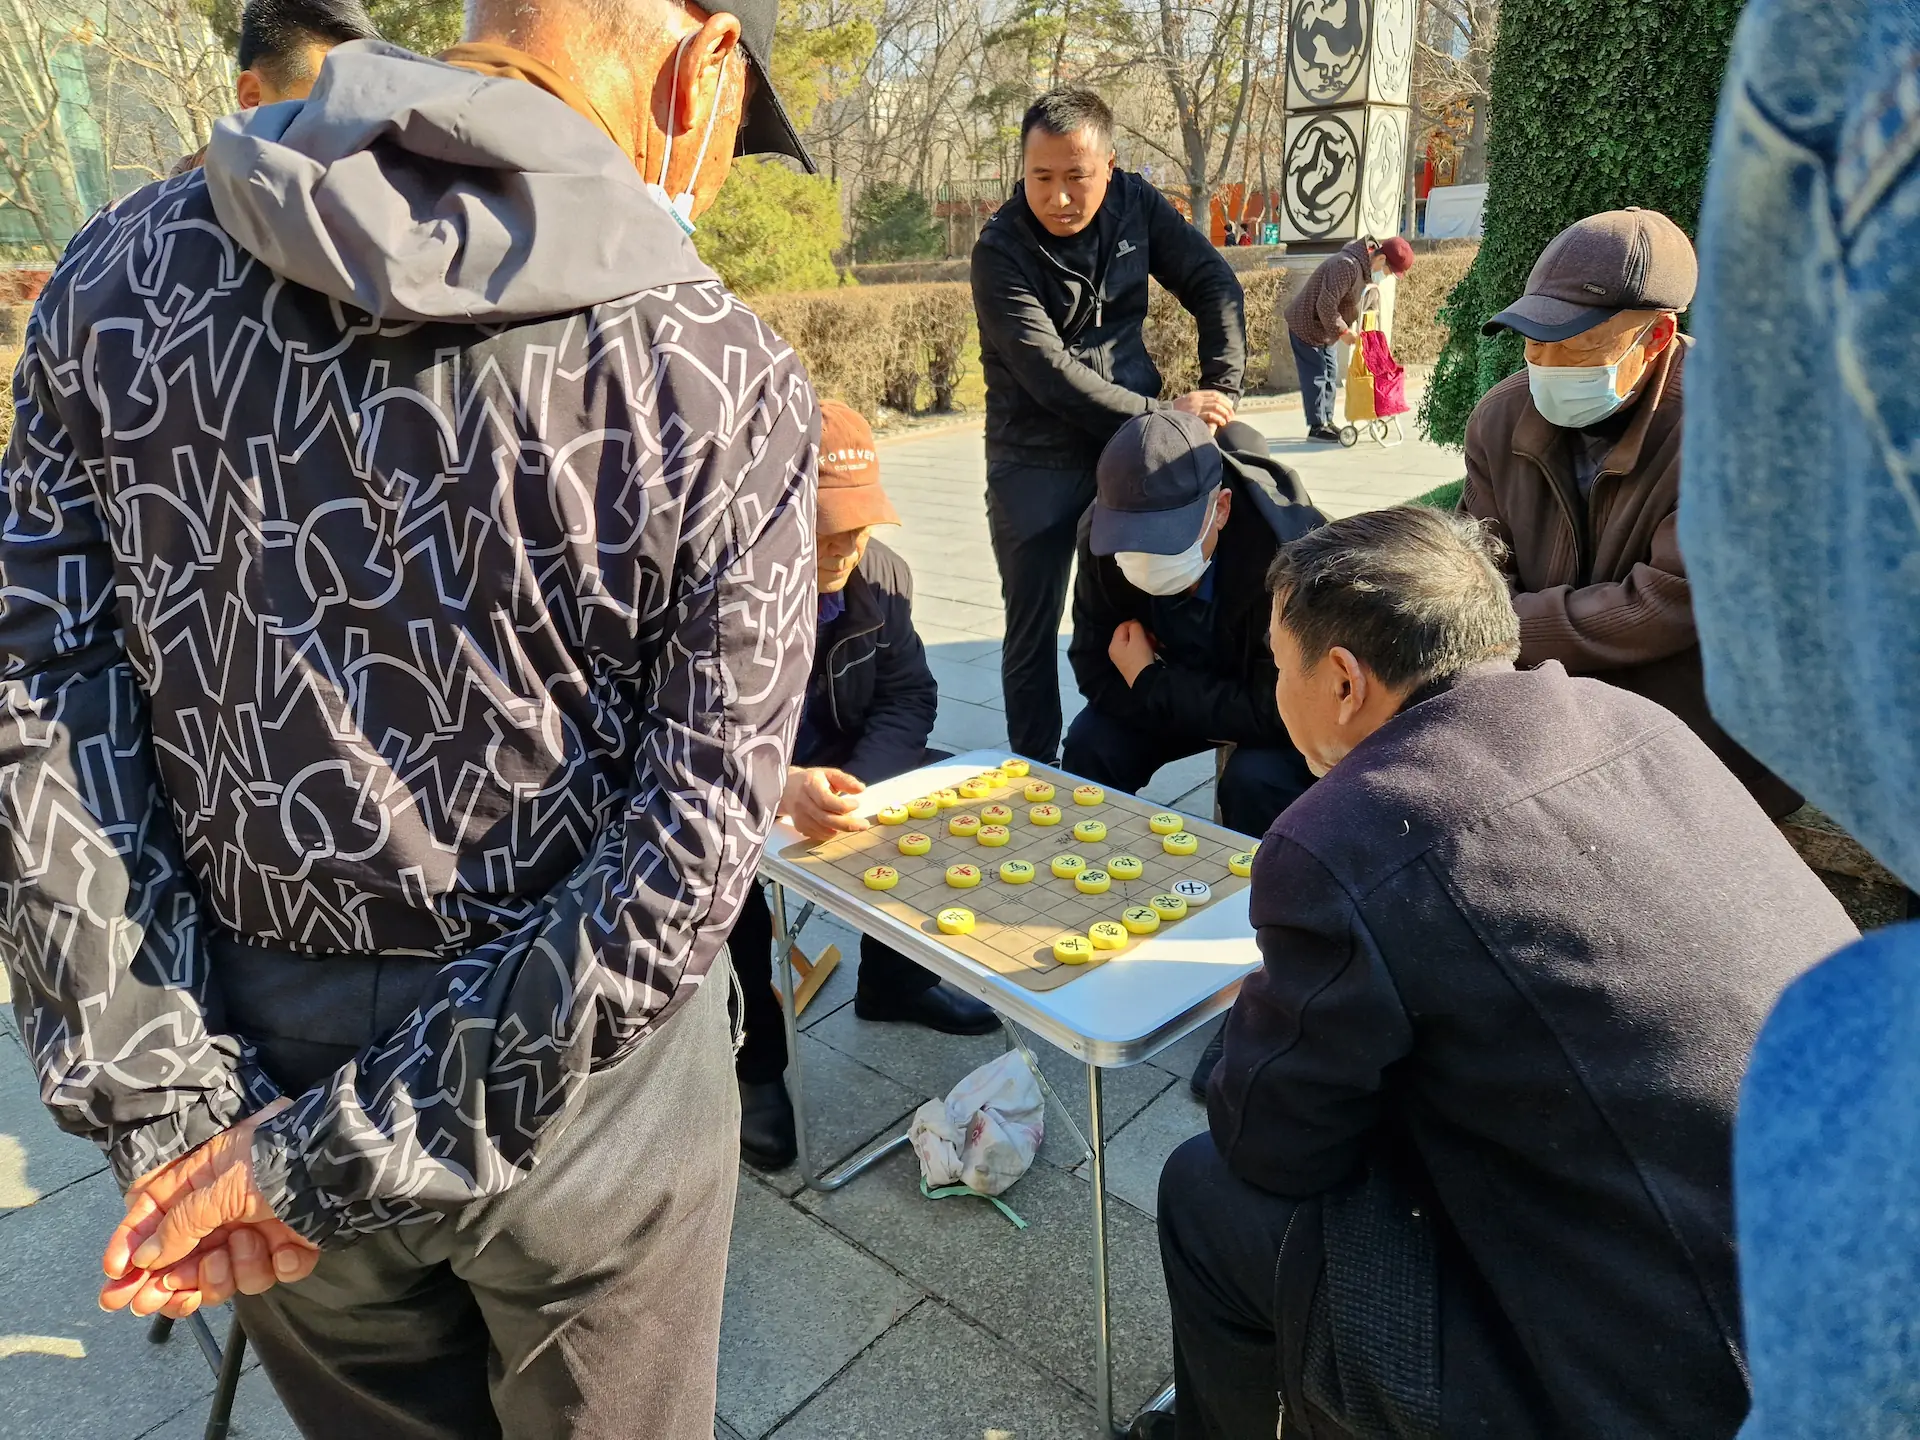 Deux messieurs s'affrontent au xiangqi sur une petite table en plastique pliable. Autour d'eux, six personnes observent le jeu intensément.